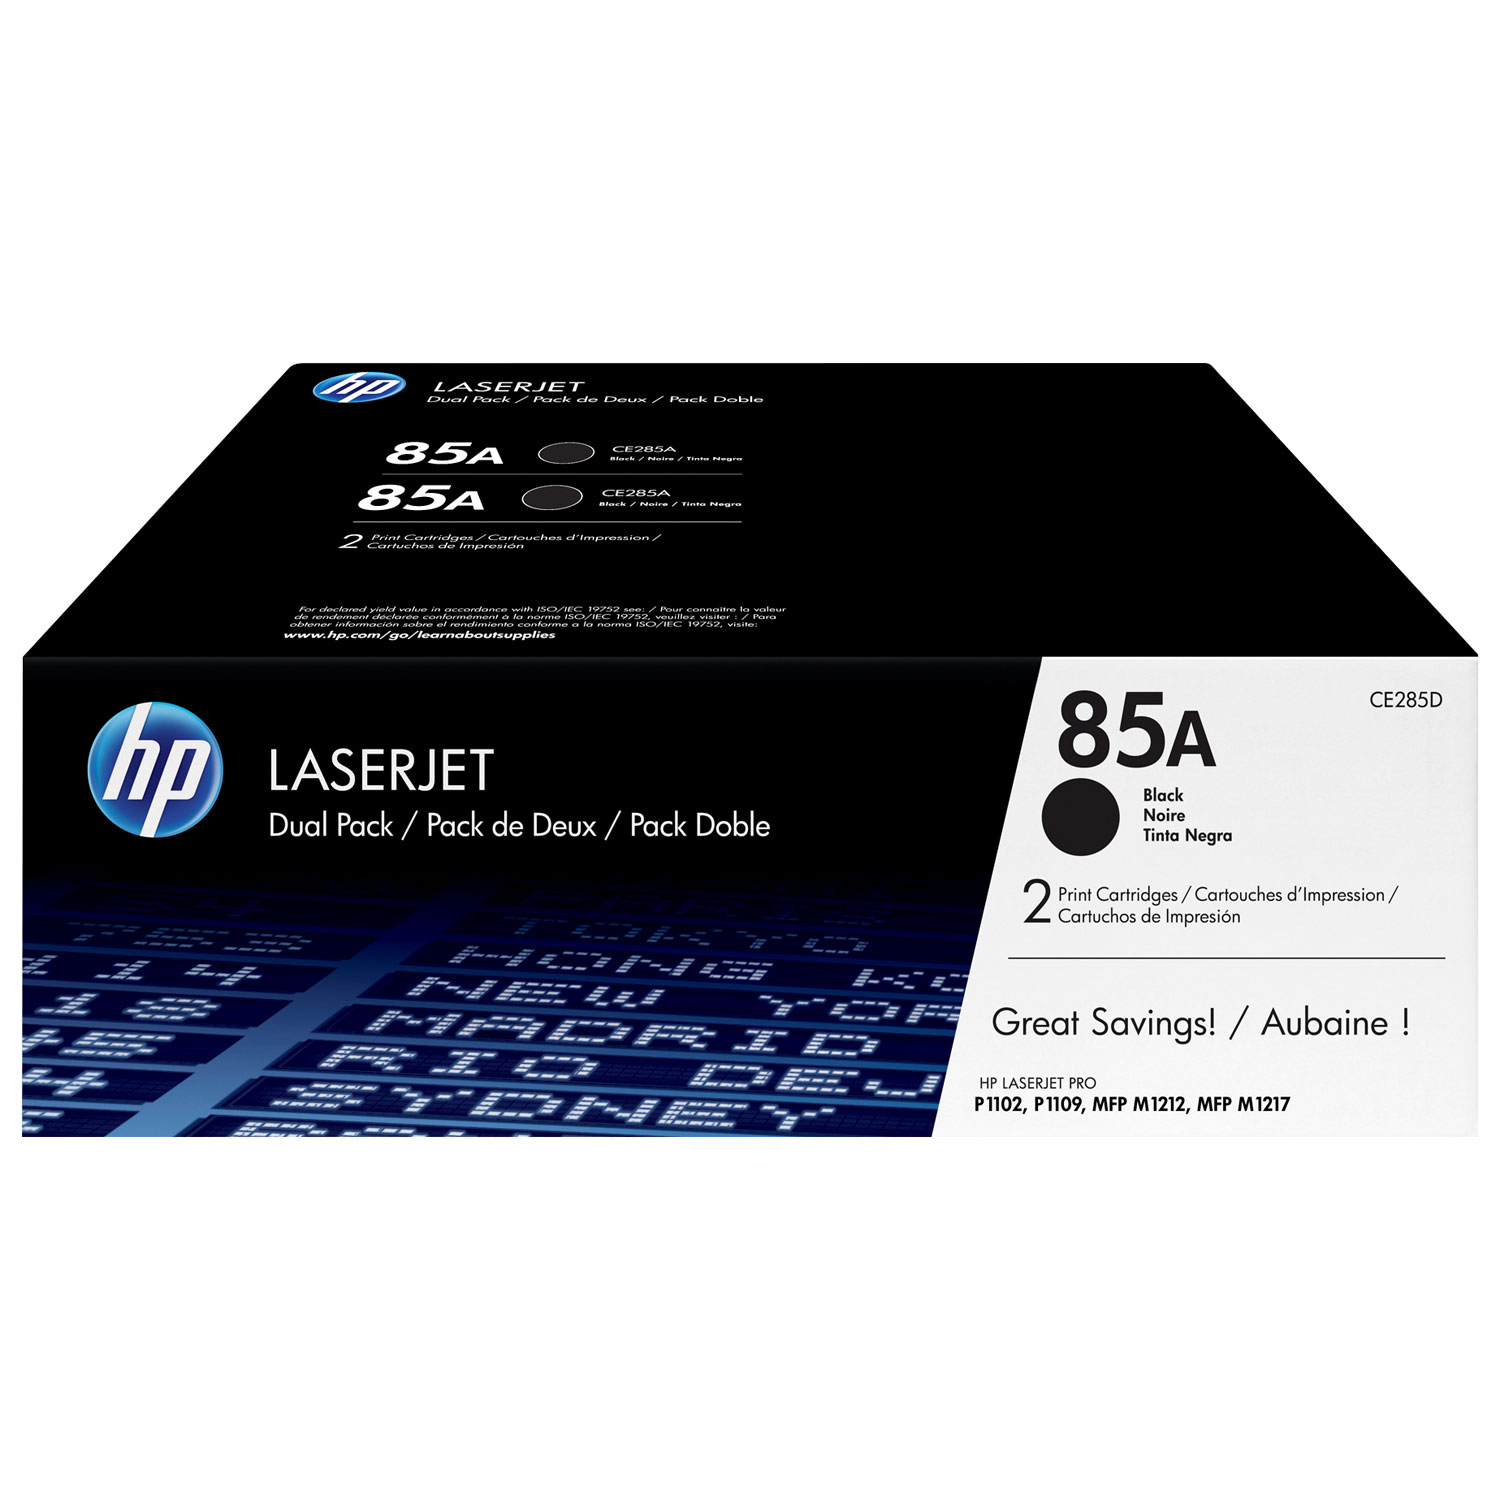 HP LaserJet 85A Black Toner (CE285D) - 2 Pack